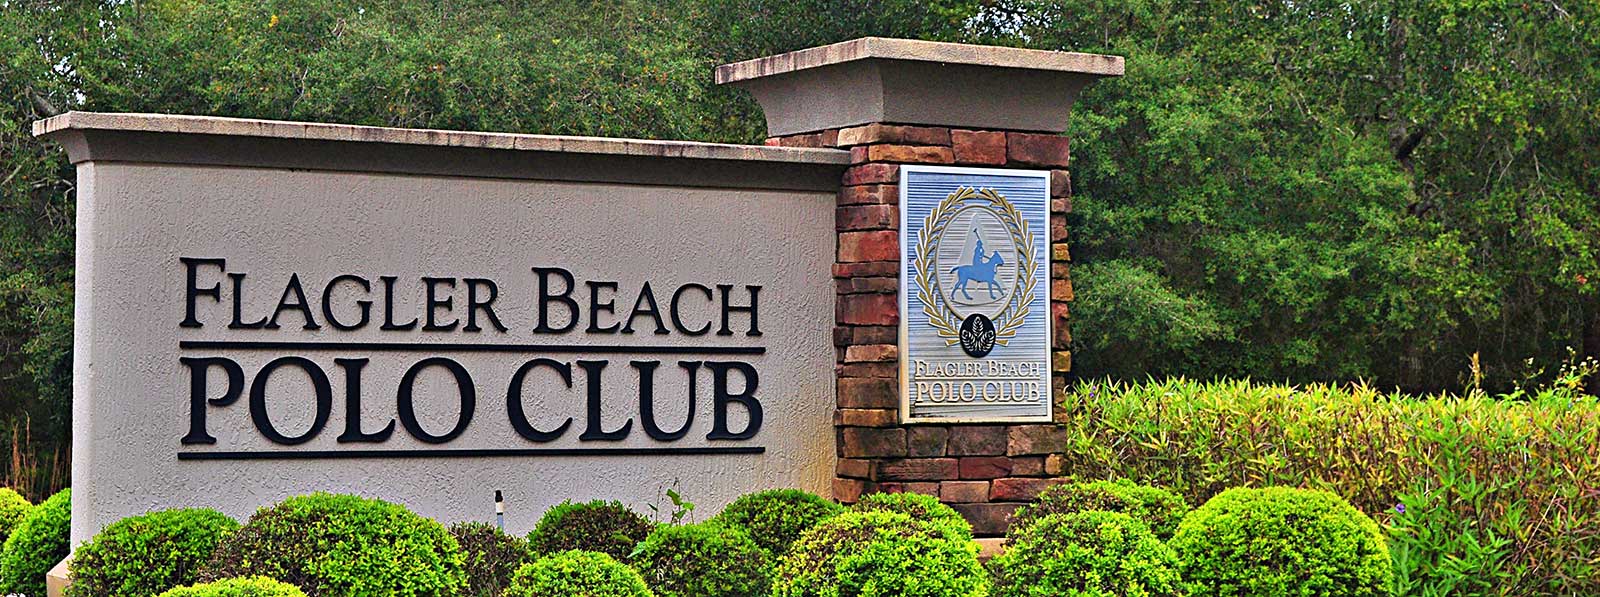 Flagler Beach Polo Club Monument Sign